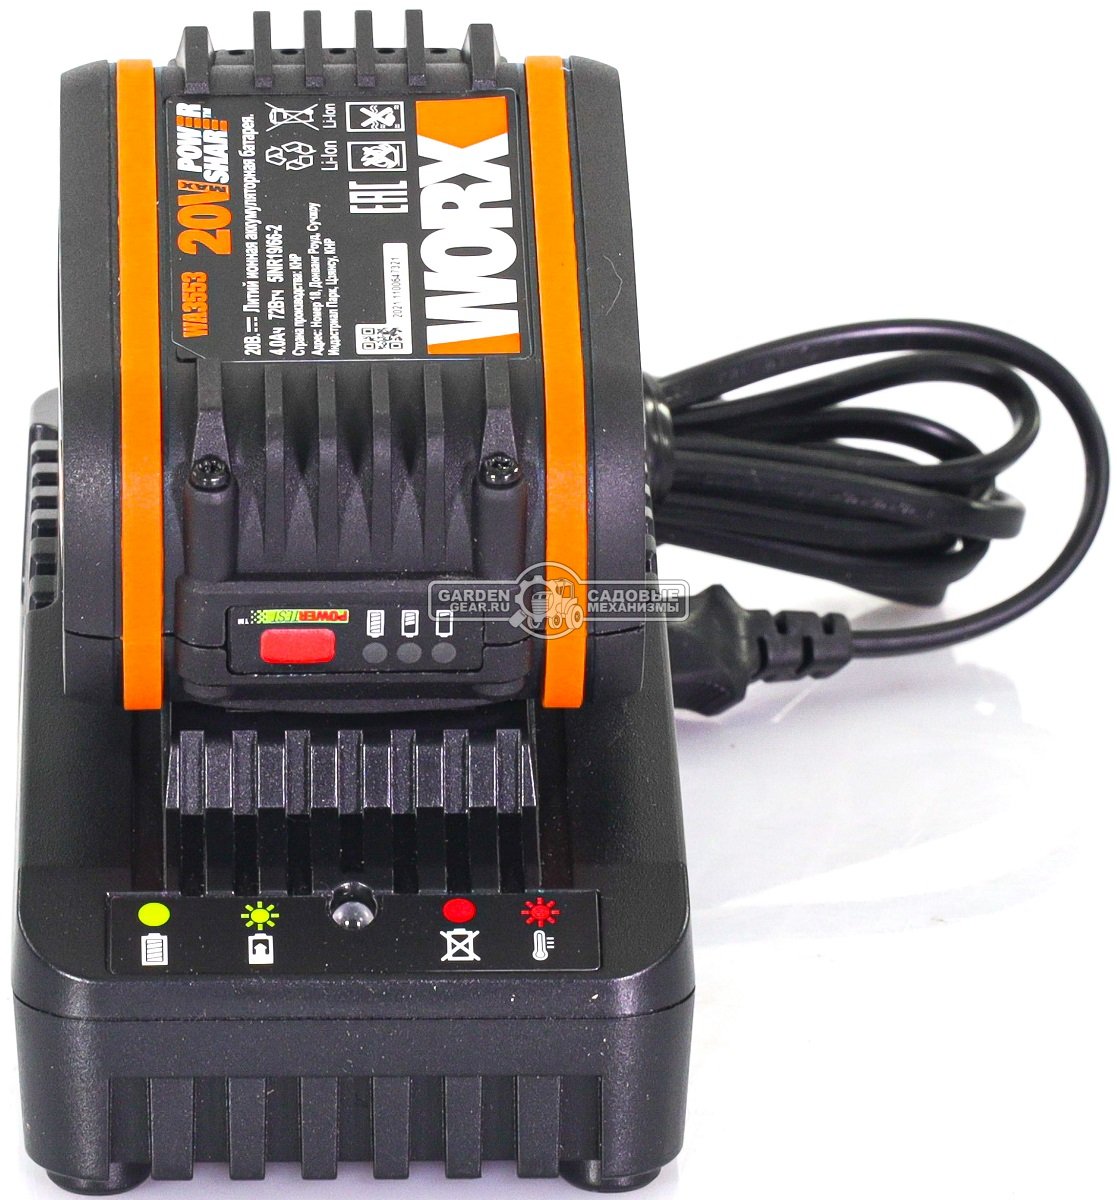 Комплект Worx WA3604: аккумулятор WA3553 (4 А/ч) + зарядное устройство WA3880 (2 А)